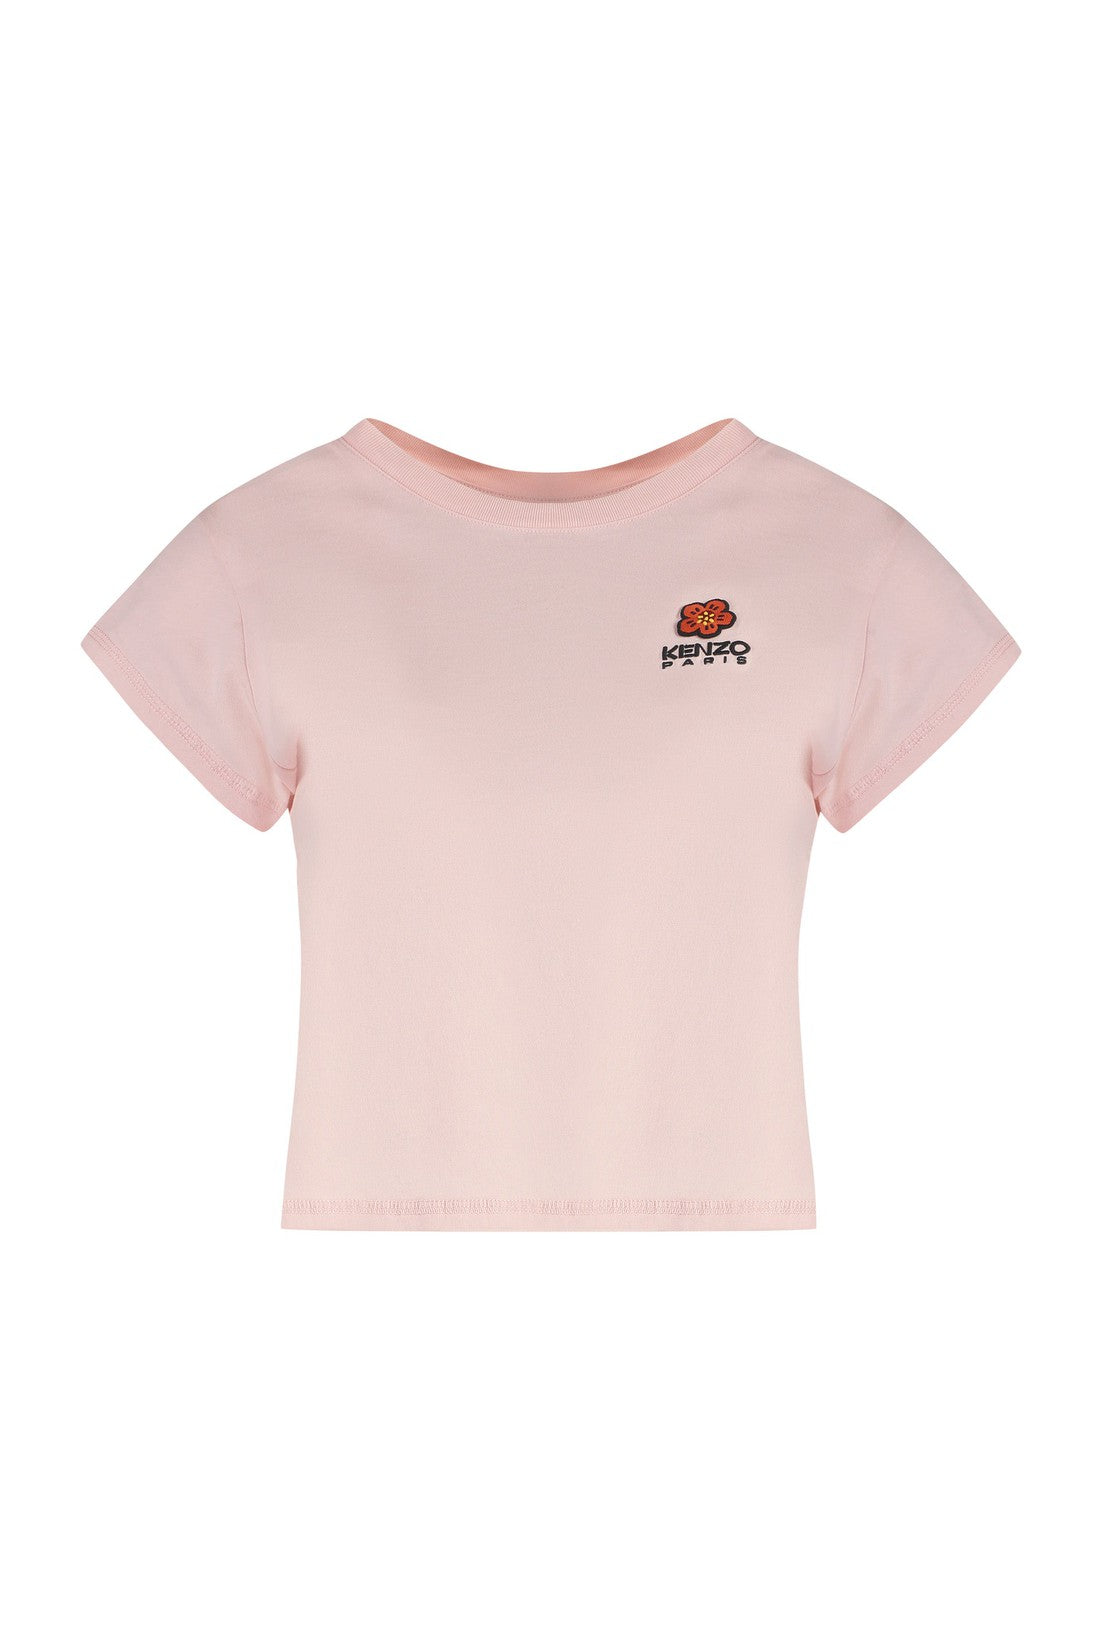 Kenzo-OUTLET-SALE-Logo cotton t-shirt-ARCHIVIST